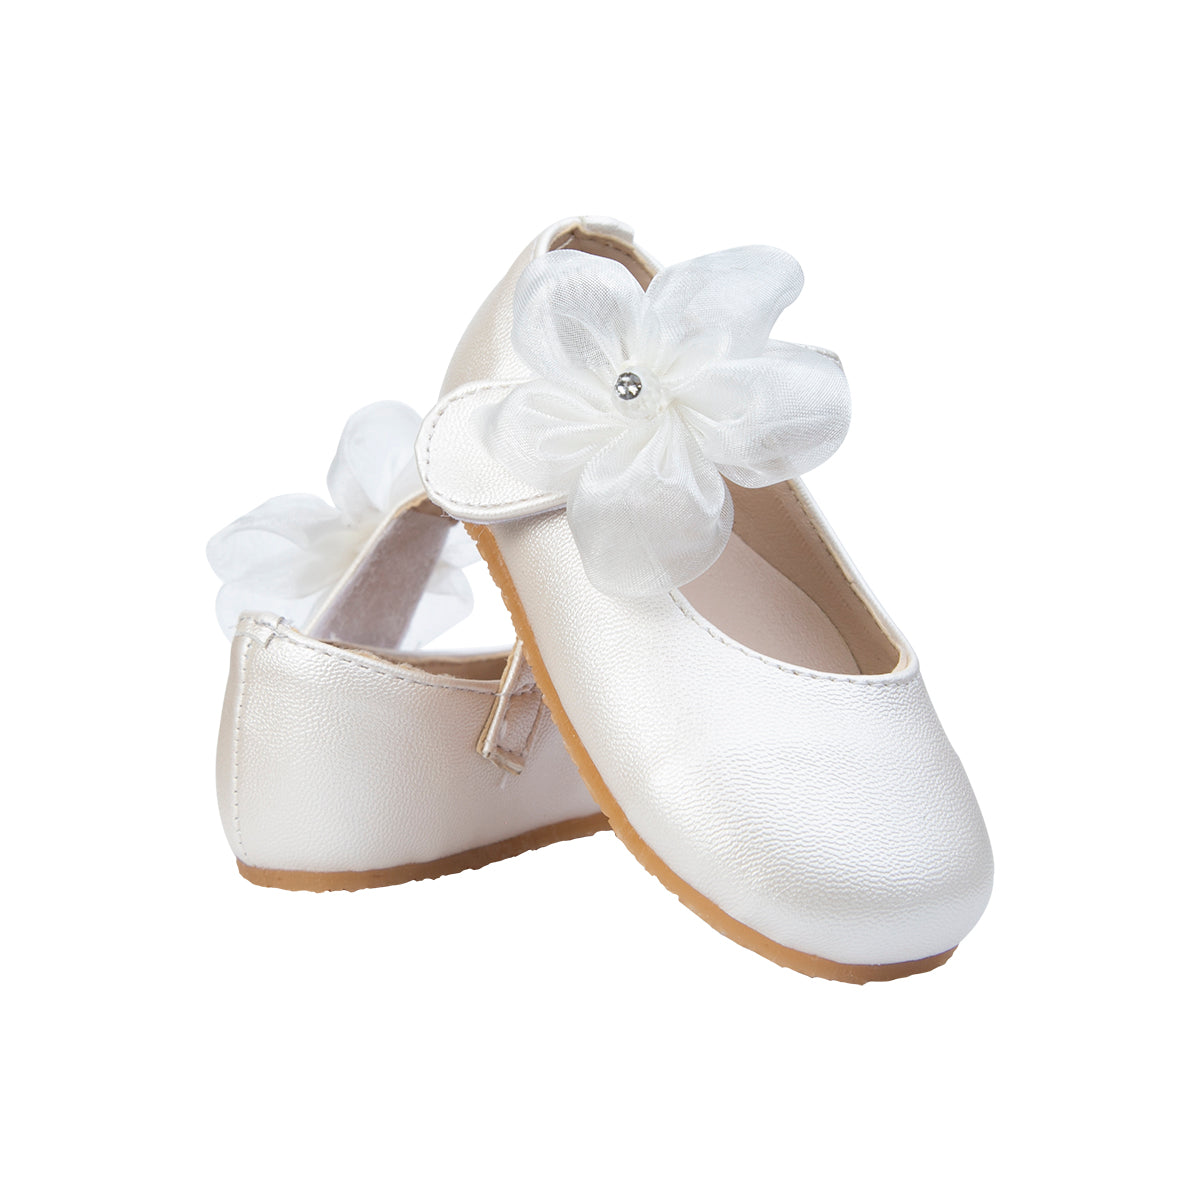 zapato bautizo nina beige ceremonia bebe